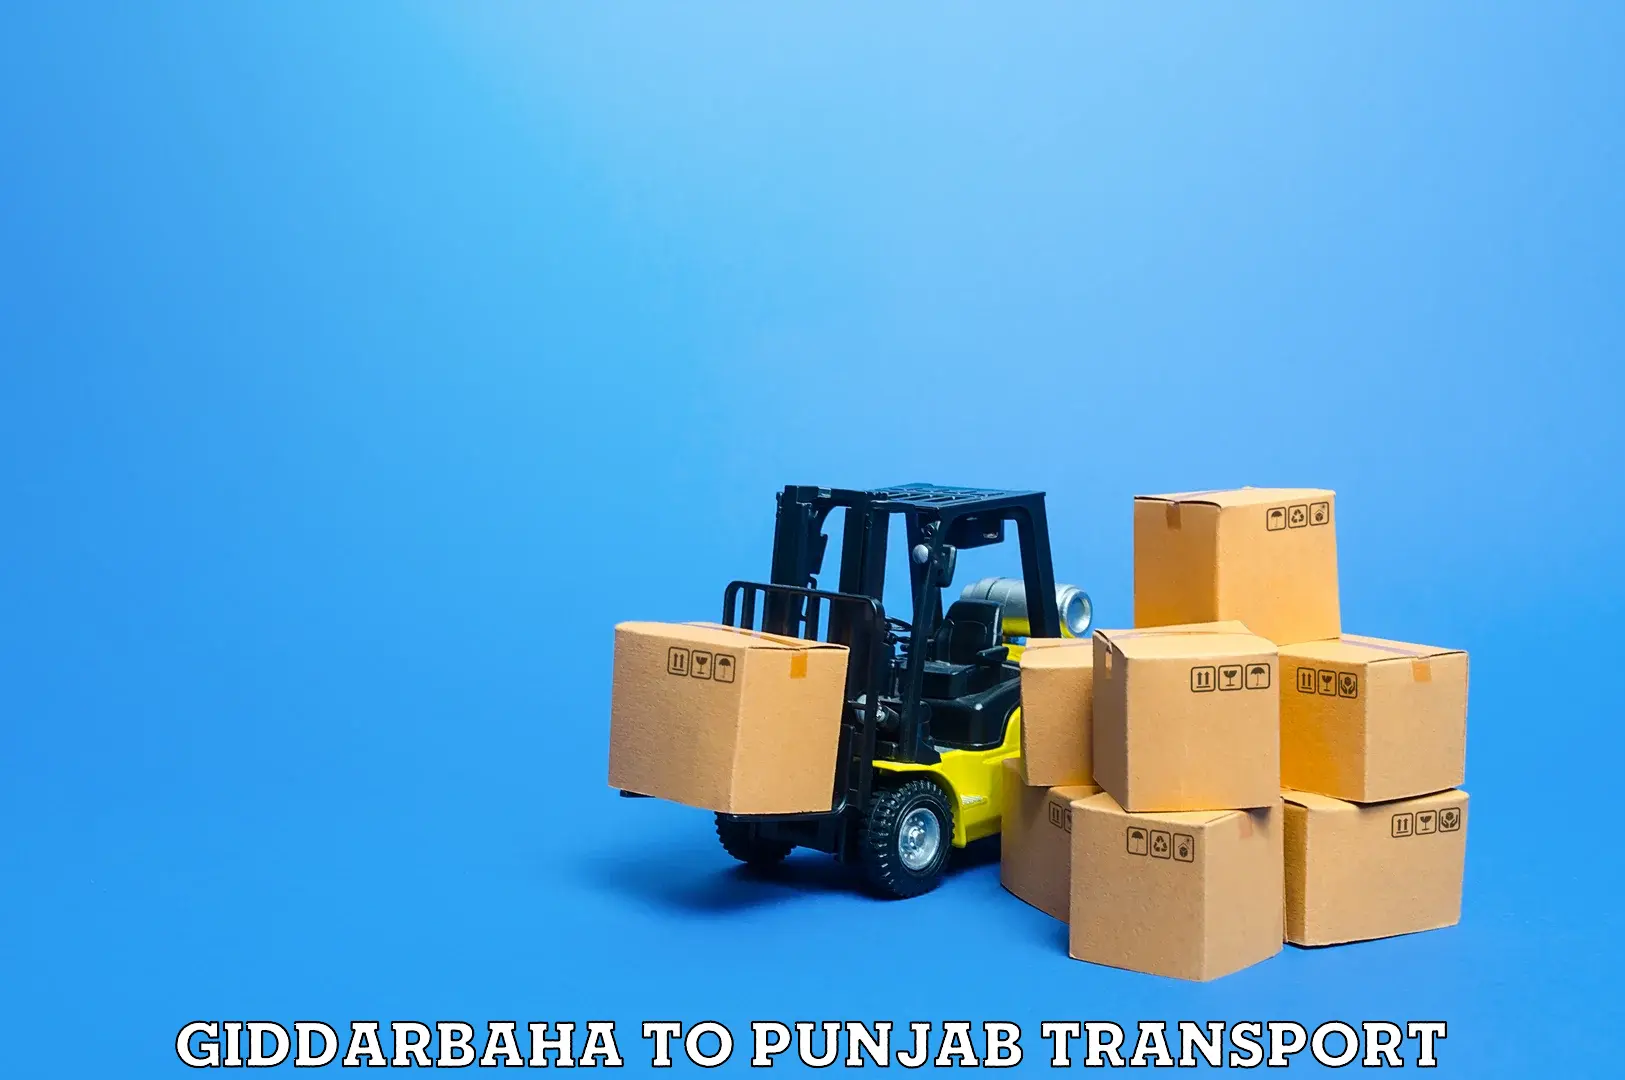 Transportation solution services Giddarbaha to Rupnagar